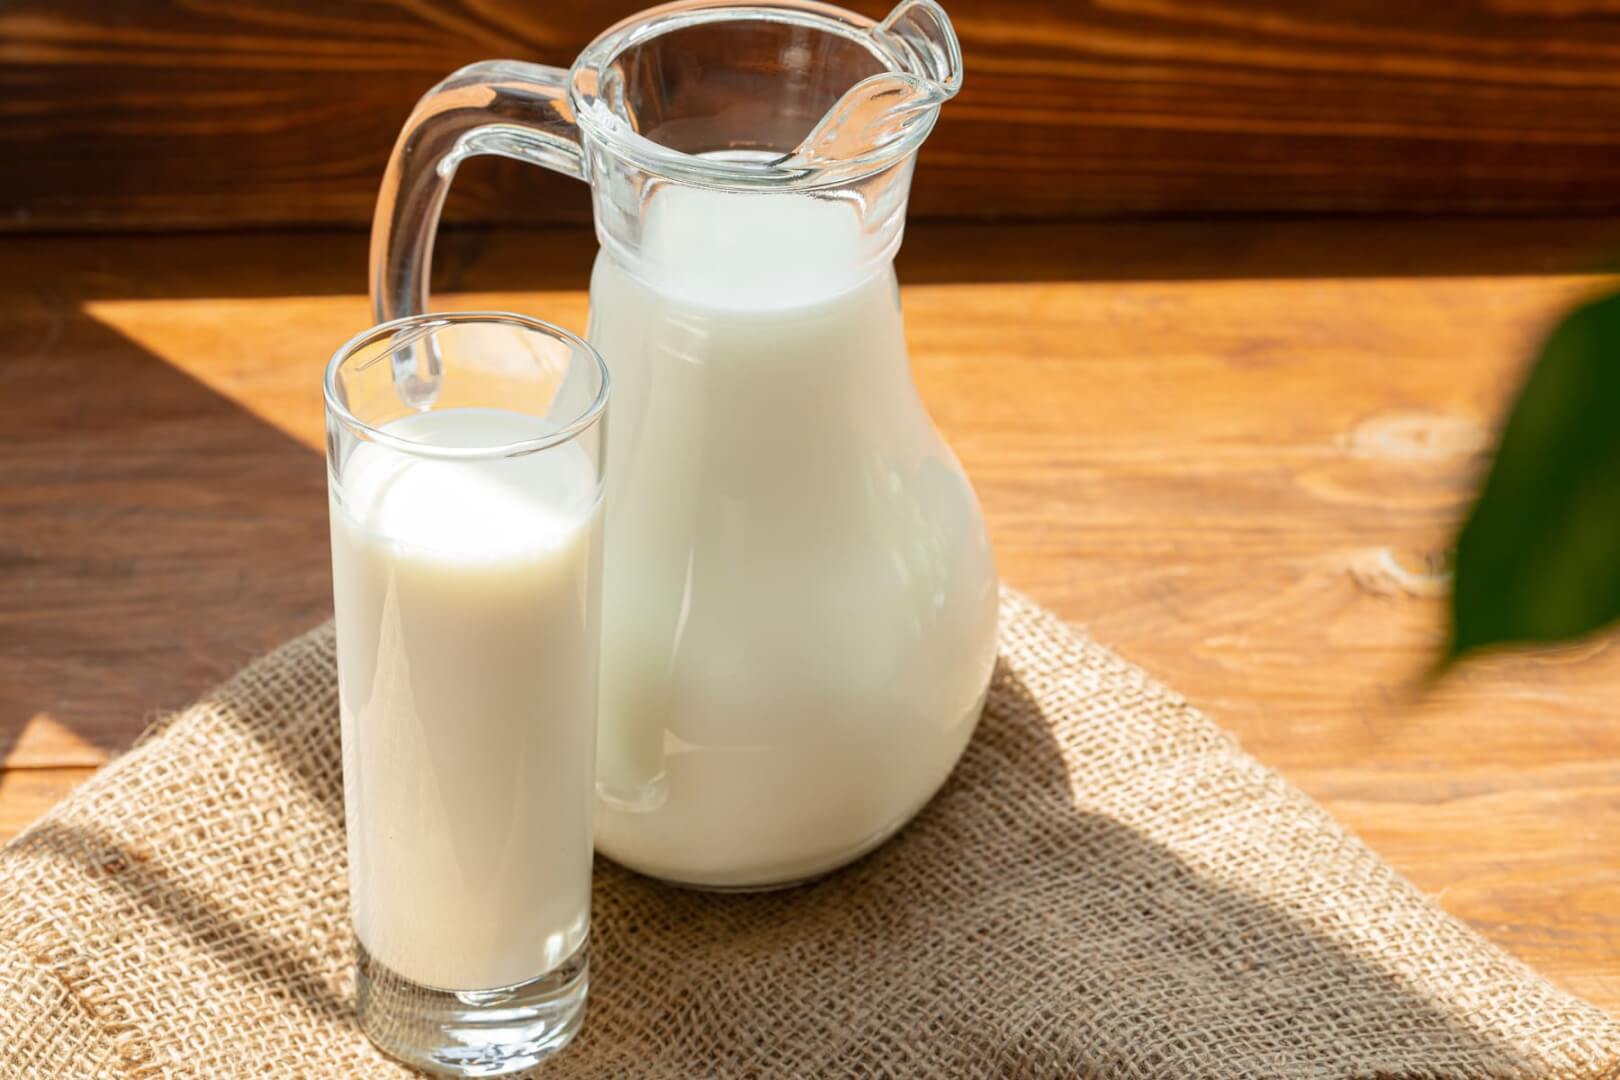 Una imagen de una jarra de leche y un vaso de leche en una mesa.